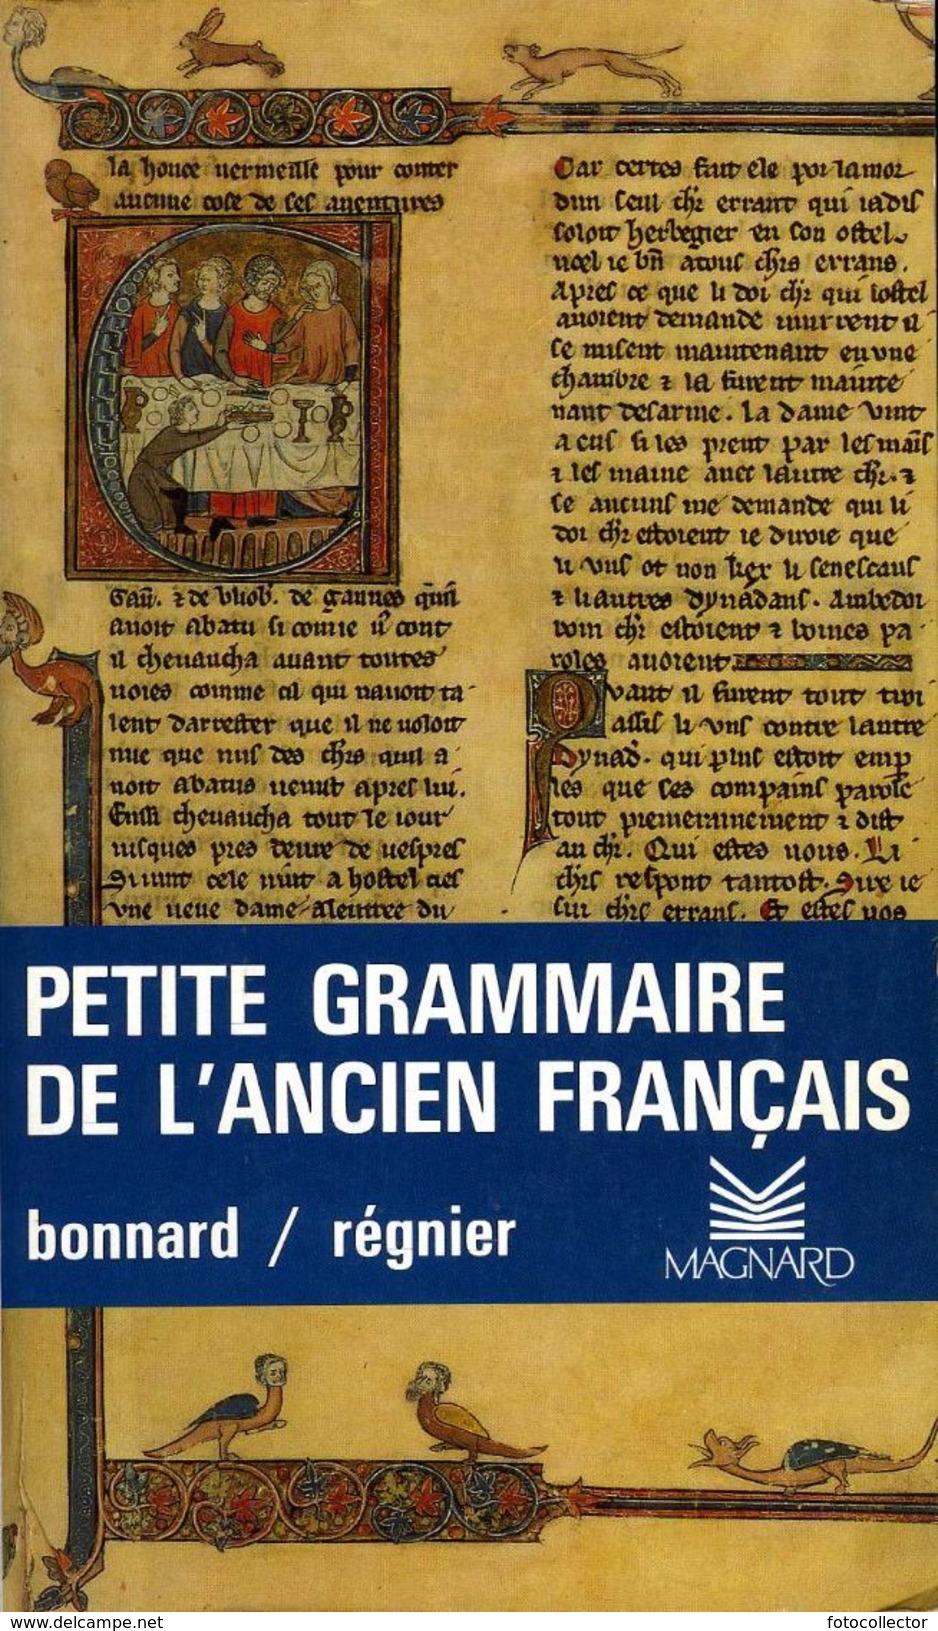 Petite Grammaire De L'ancien Français Par Bonnard Et Régnier (ISBN 2210422094 EAN 978210422094) - Diccionarios